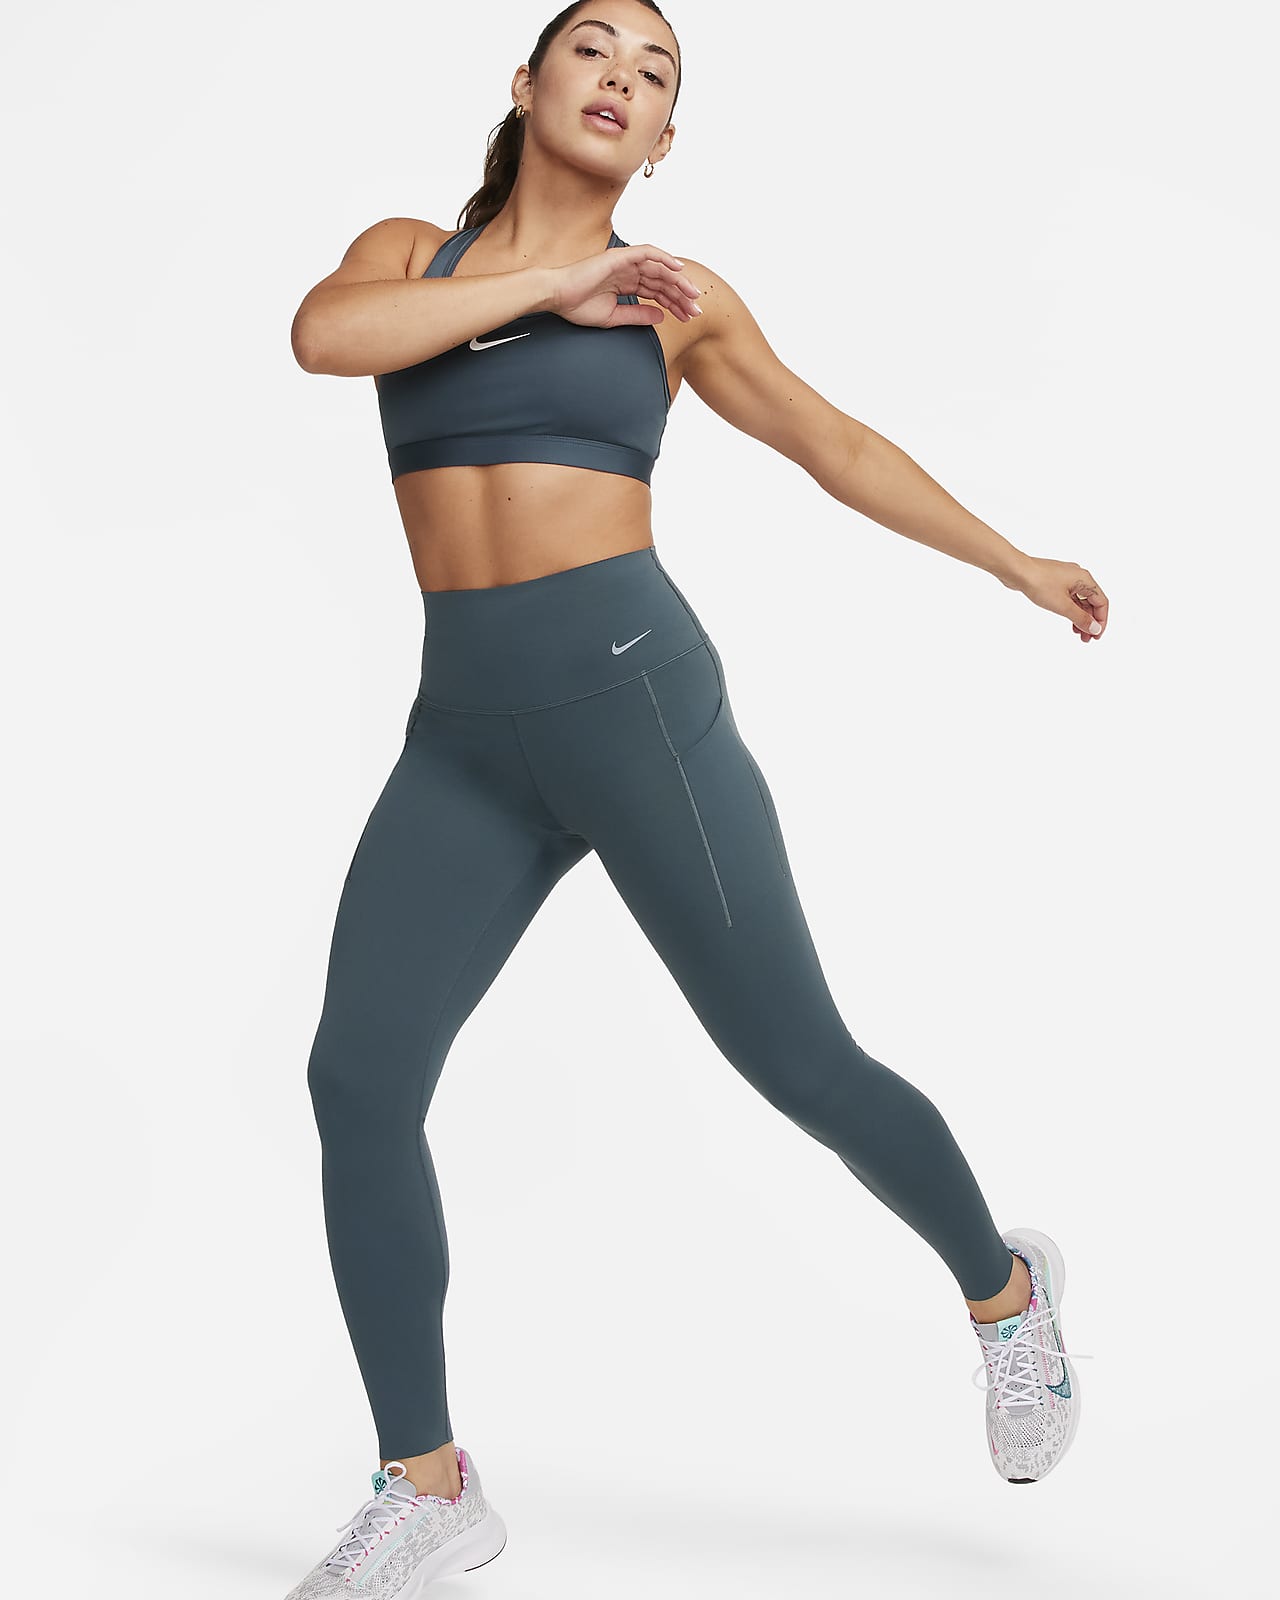 Nike Universa Leggings in voller Länge mit Taschen, mittlerem Halt und hohem Bund für Damen